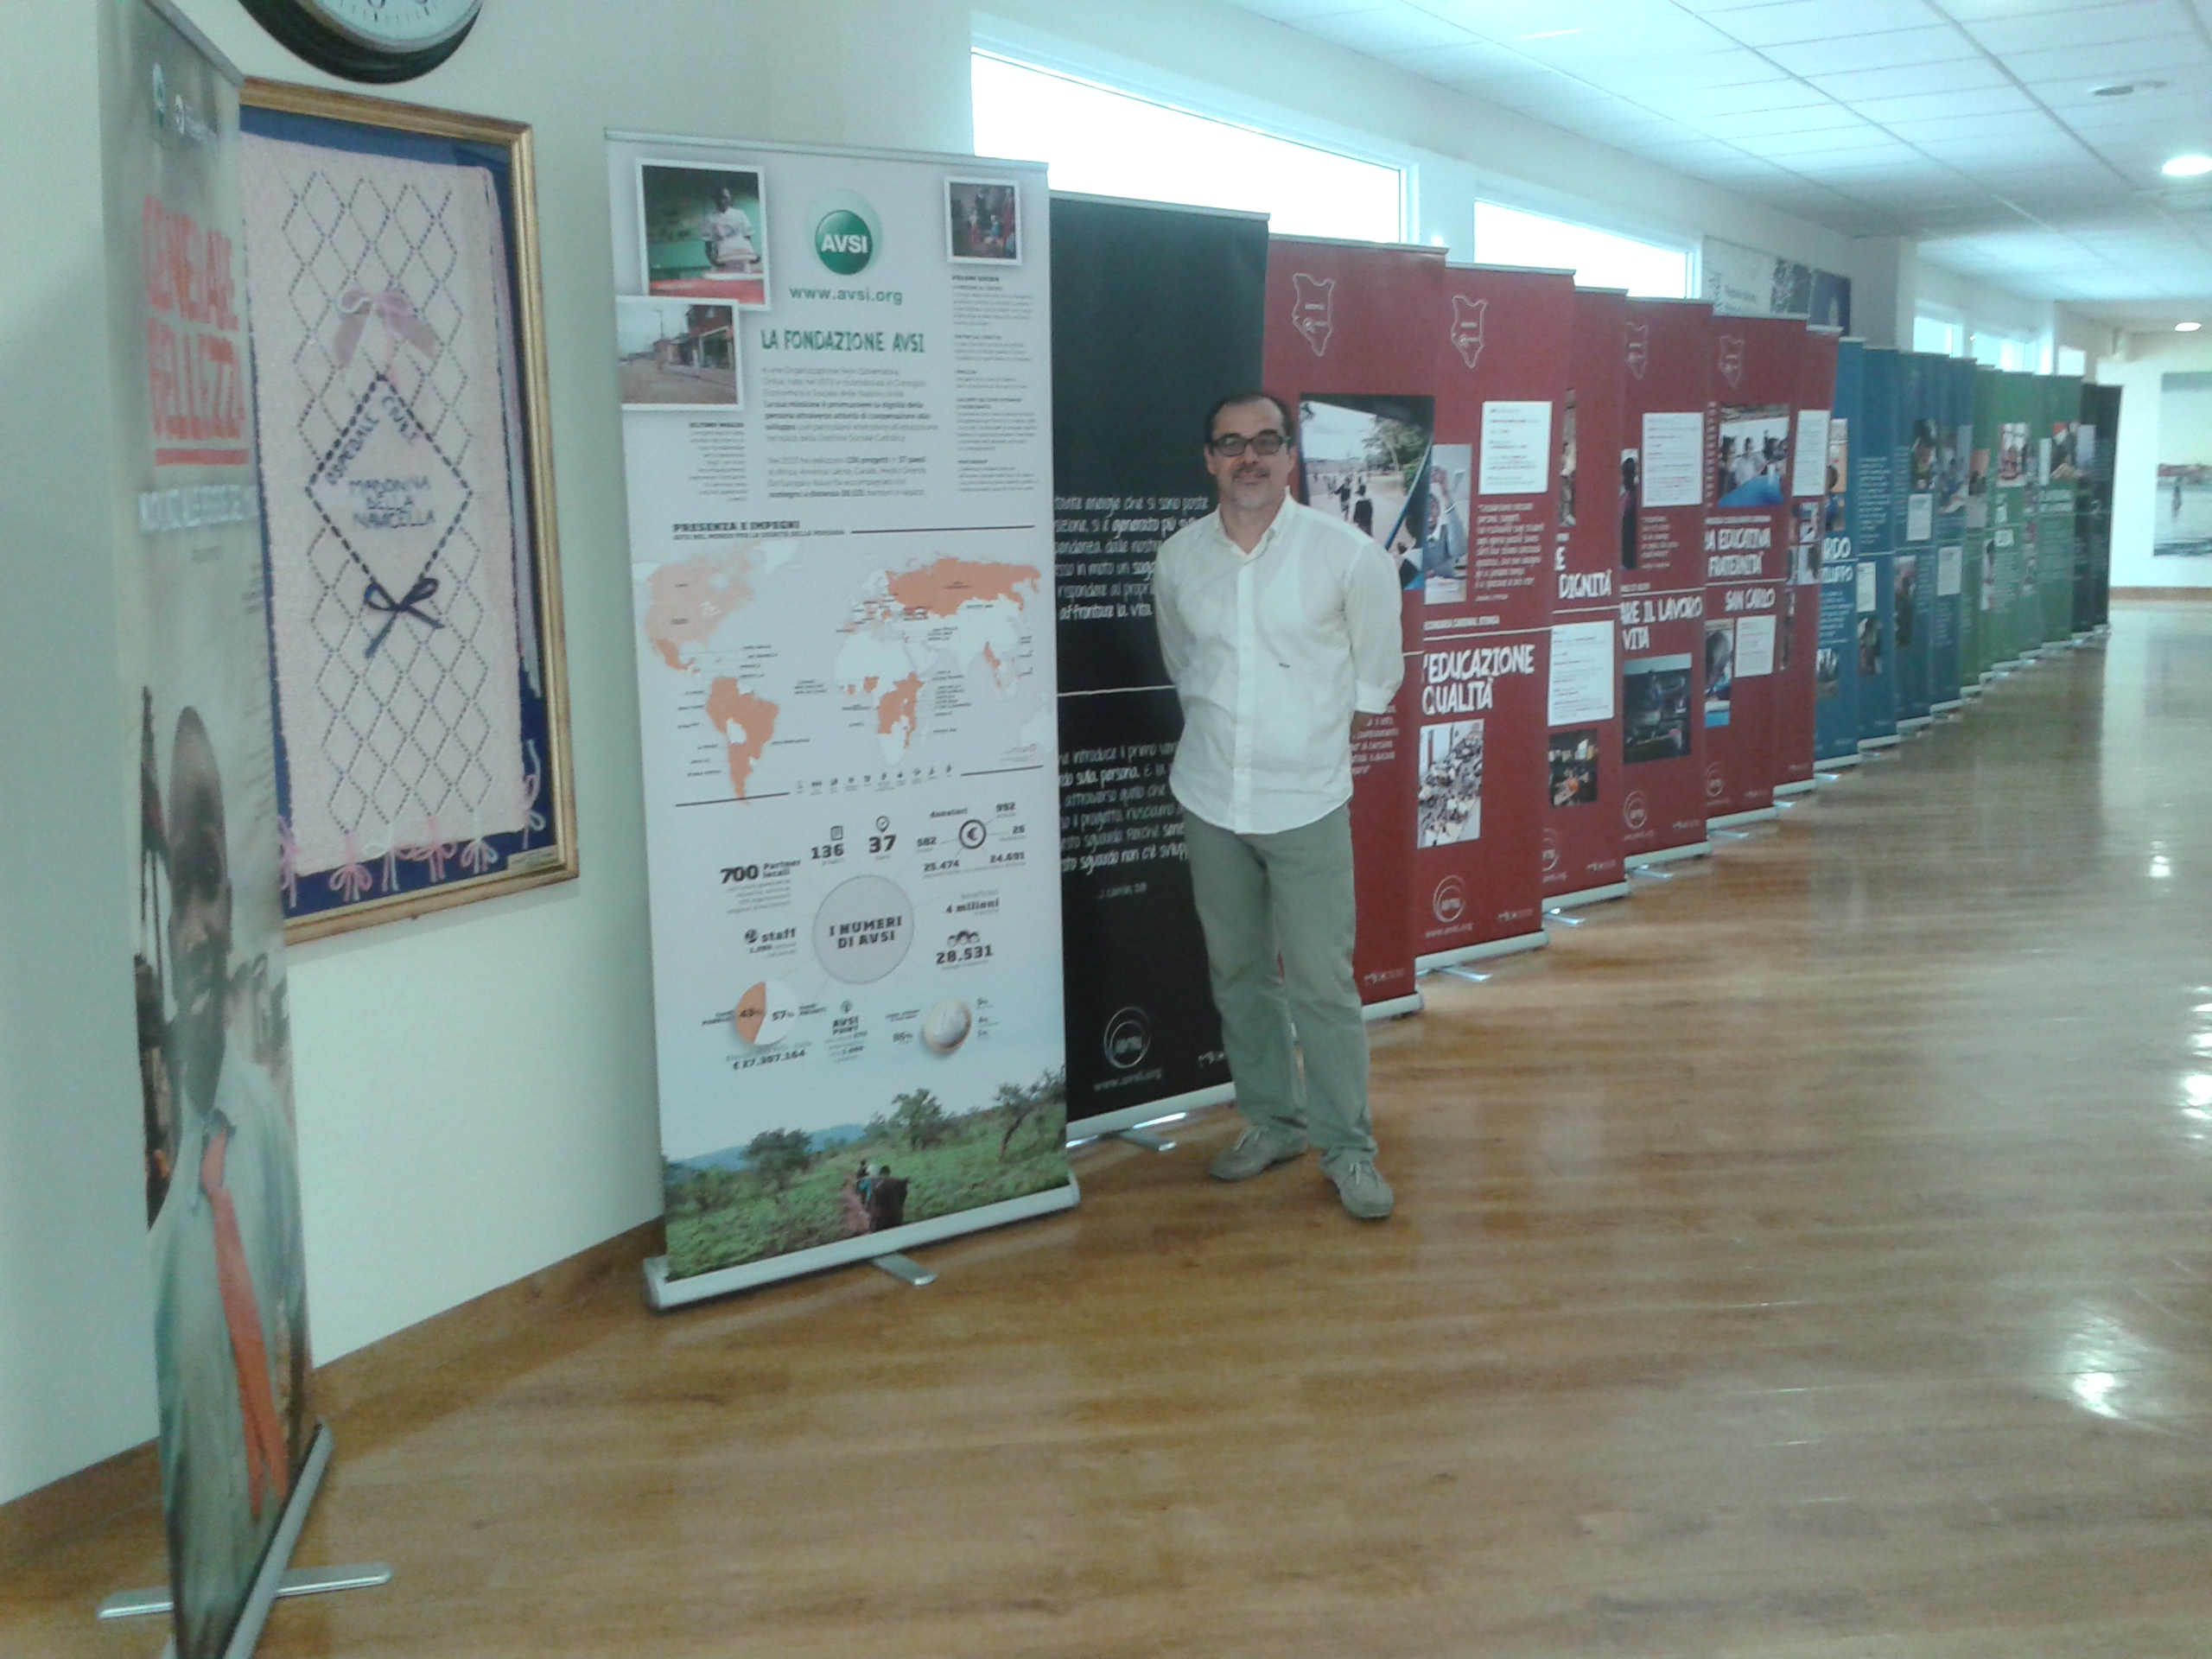 antonio boscolo anzoletti - mostra dell'AVSI nell'atrio dell'ospedale di Chioggia (Ve) a maggio del 2015.